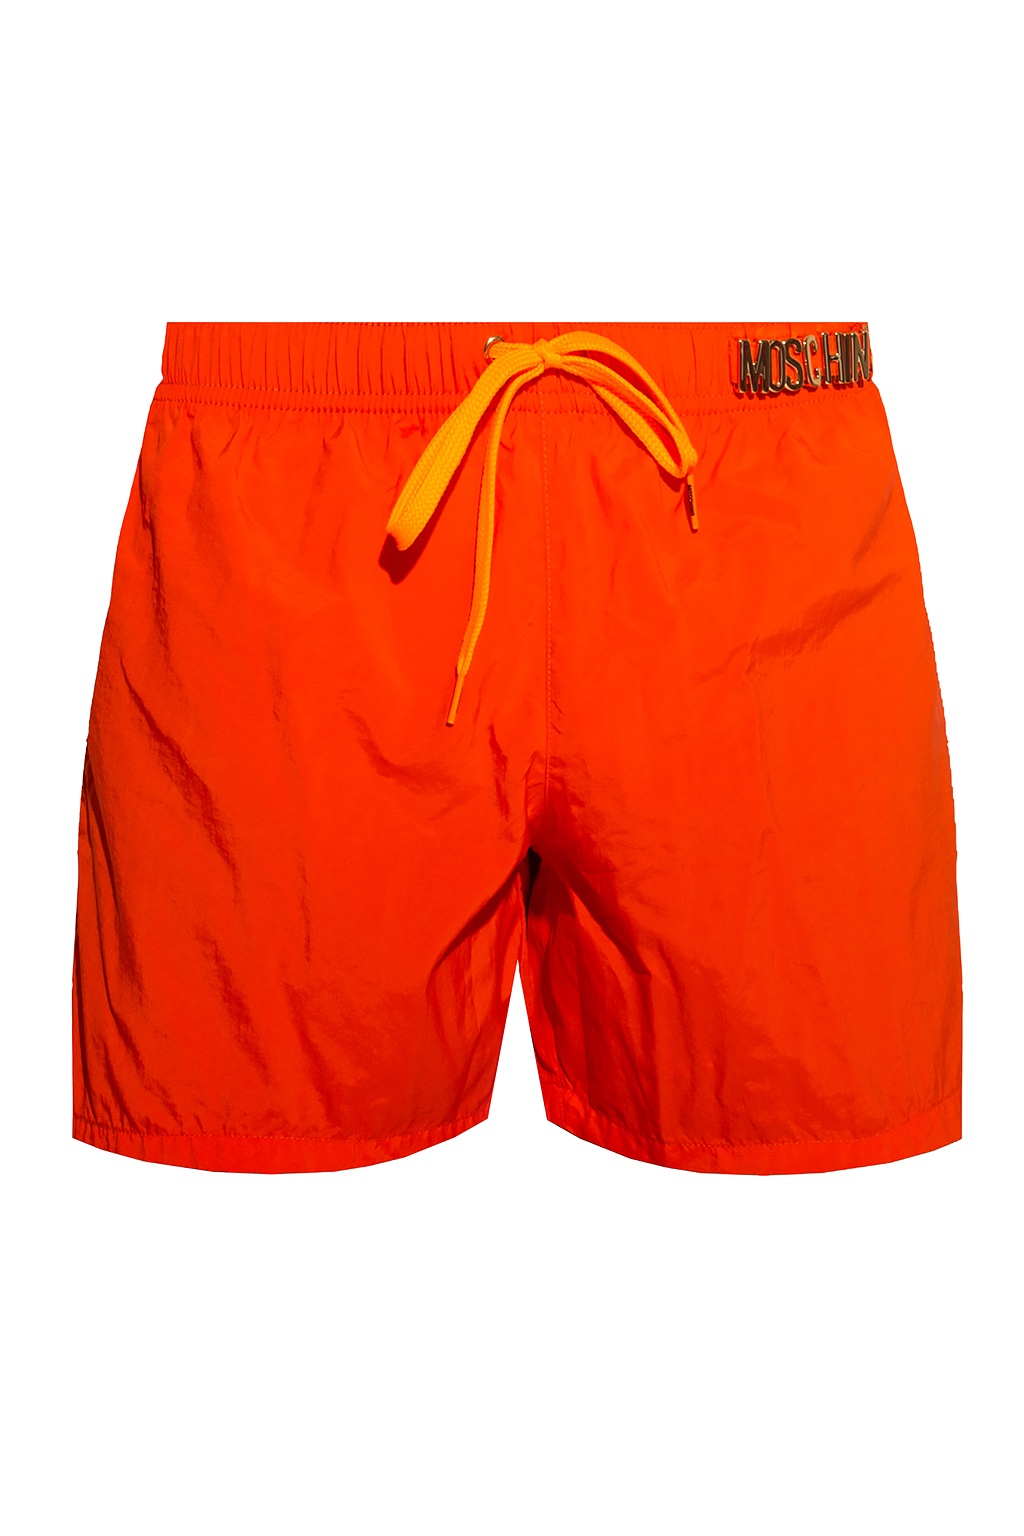 moschino swim shorts